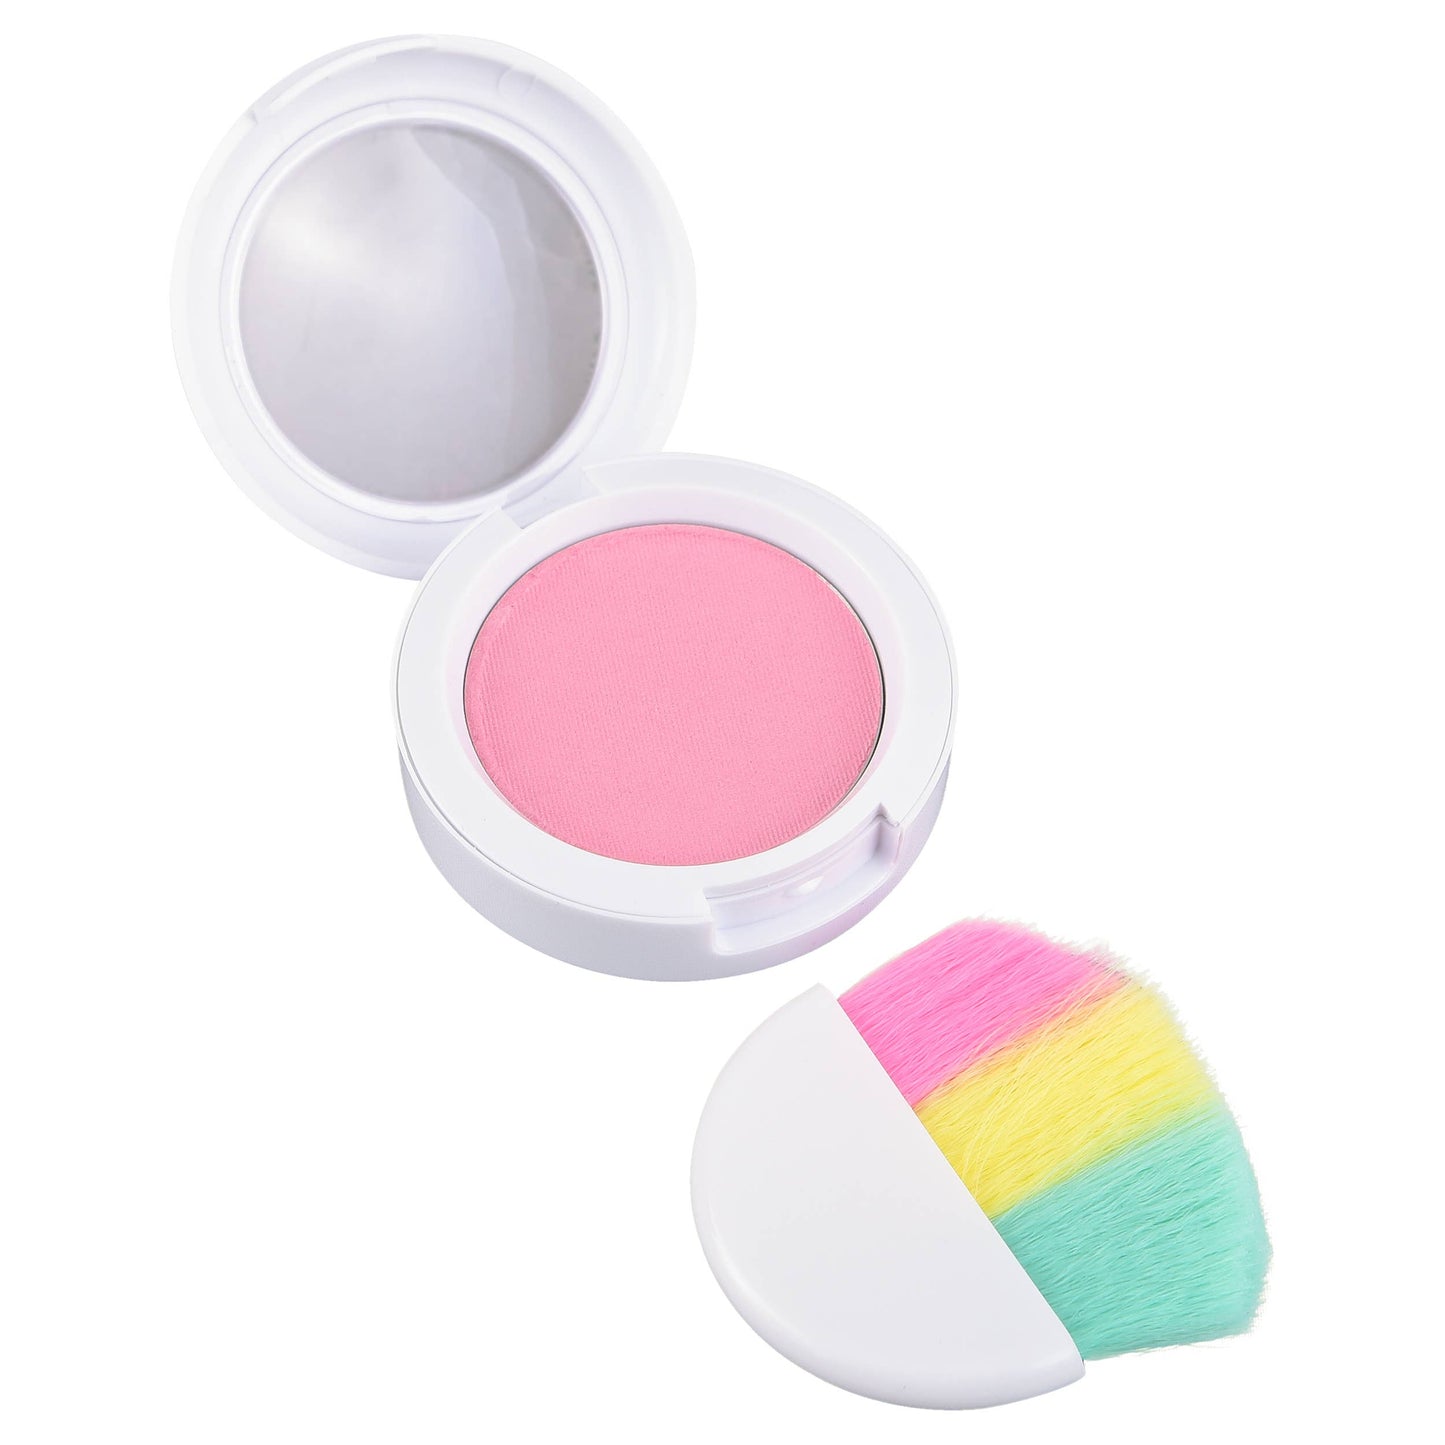 NEW! Arc of Joy - Rainbow Dream Deluxe Makeup Kit: Arc of Joy